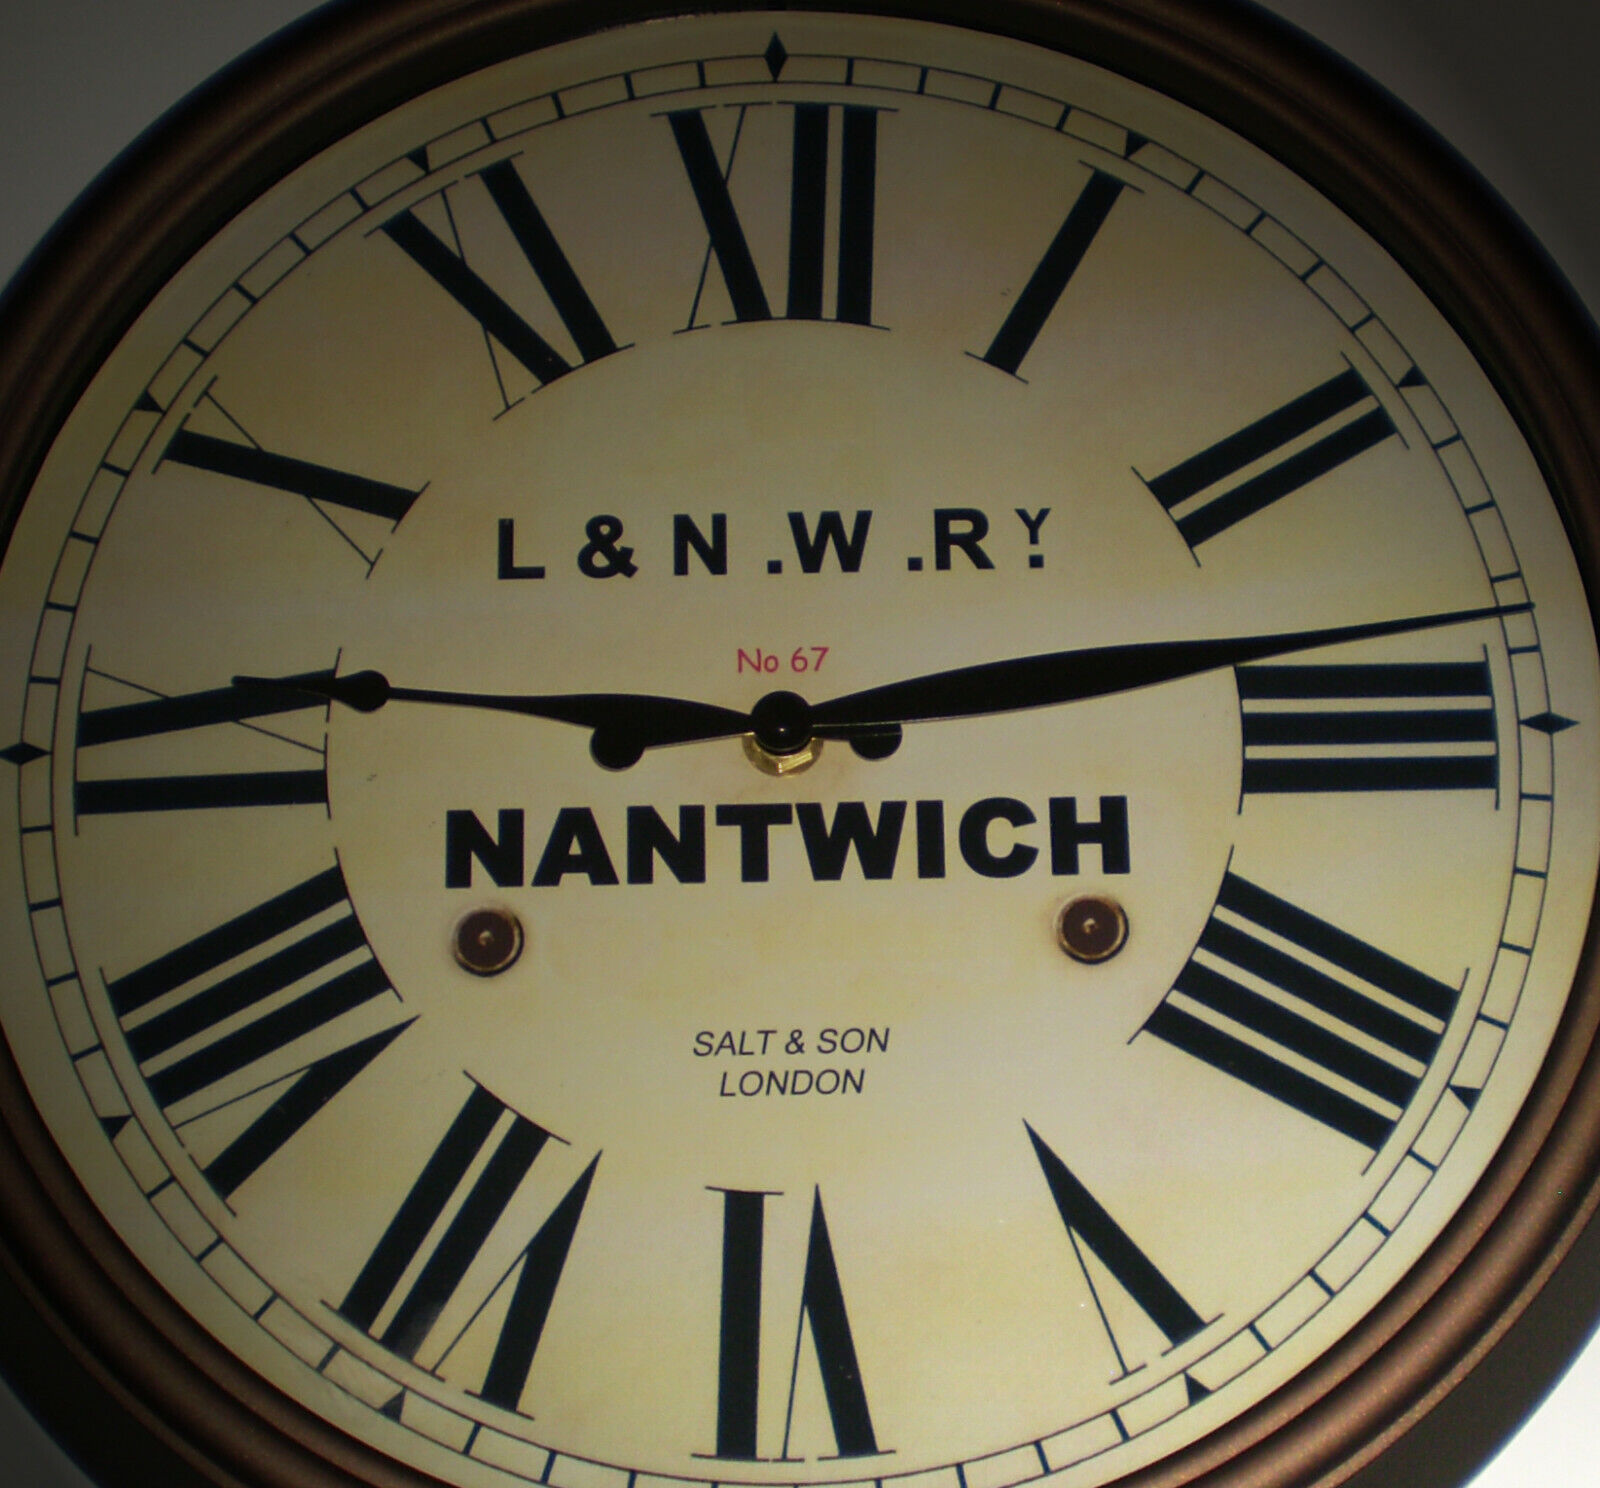 L&NWR London & North Western Railway, 30cm Station Wall Clock, Nantwich Station